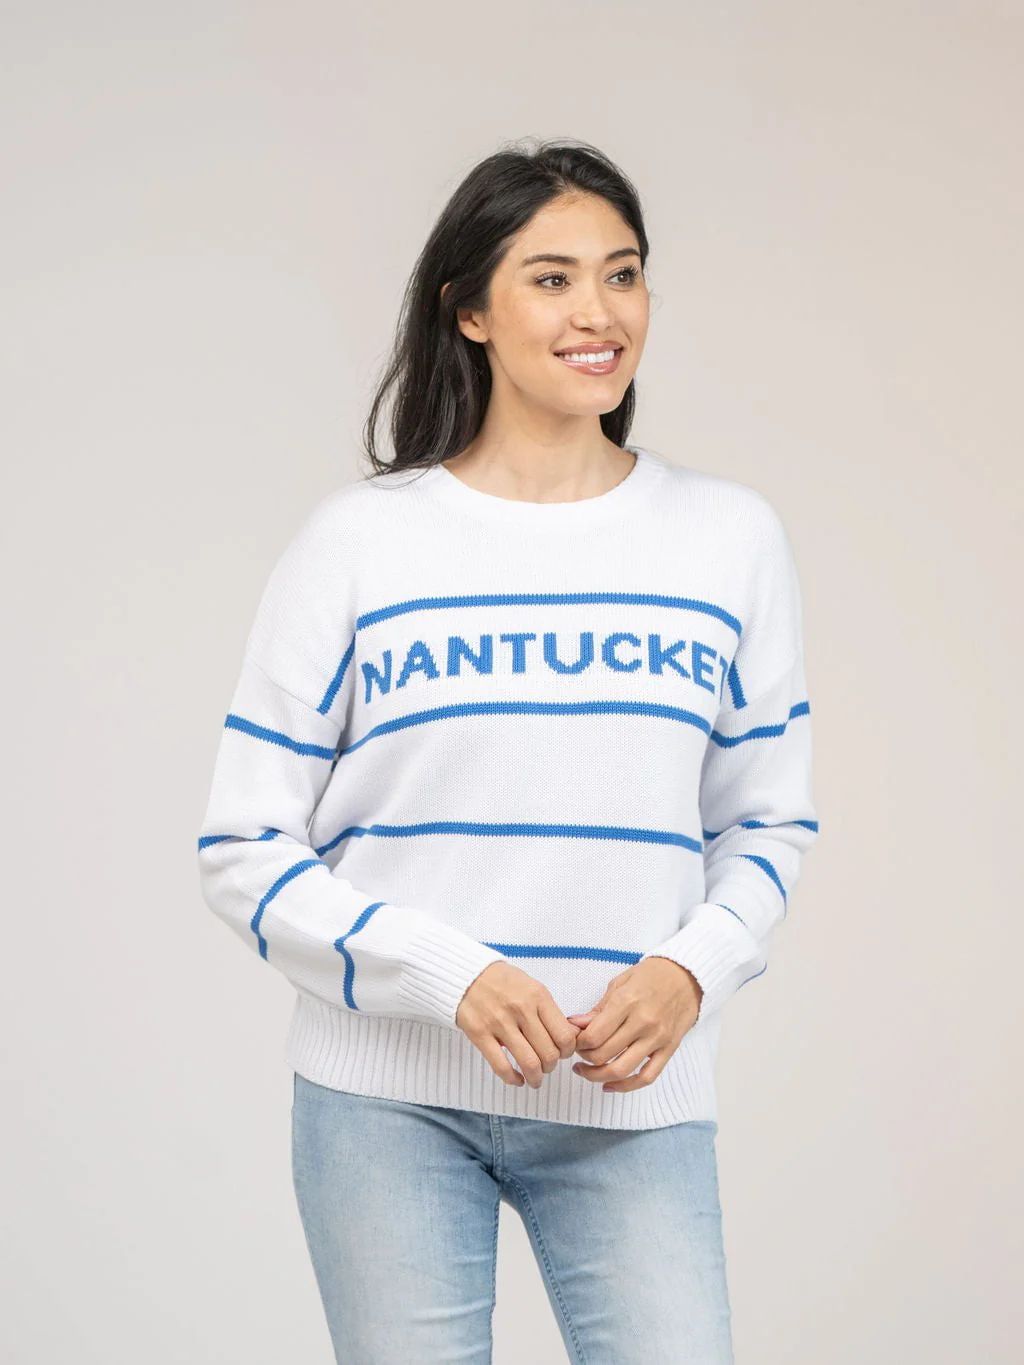 Nantucket Sweater in White Stripe | Beau & Ro